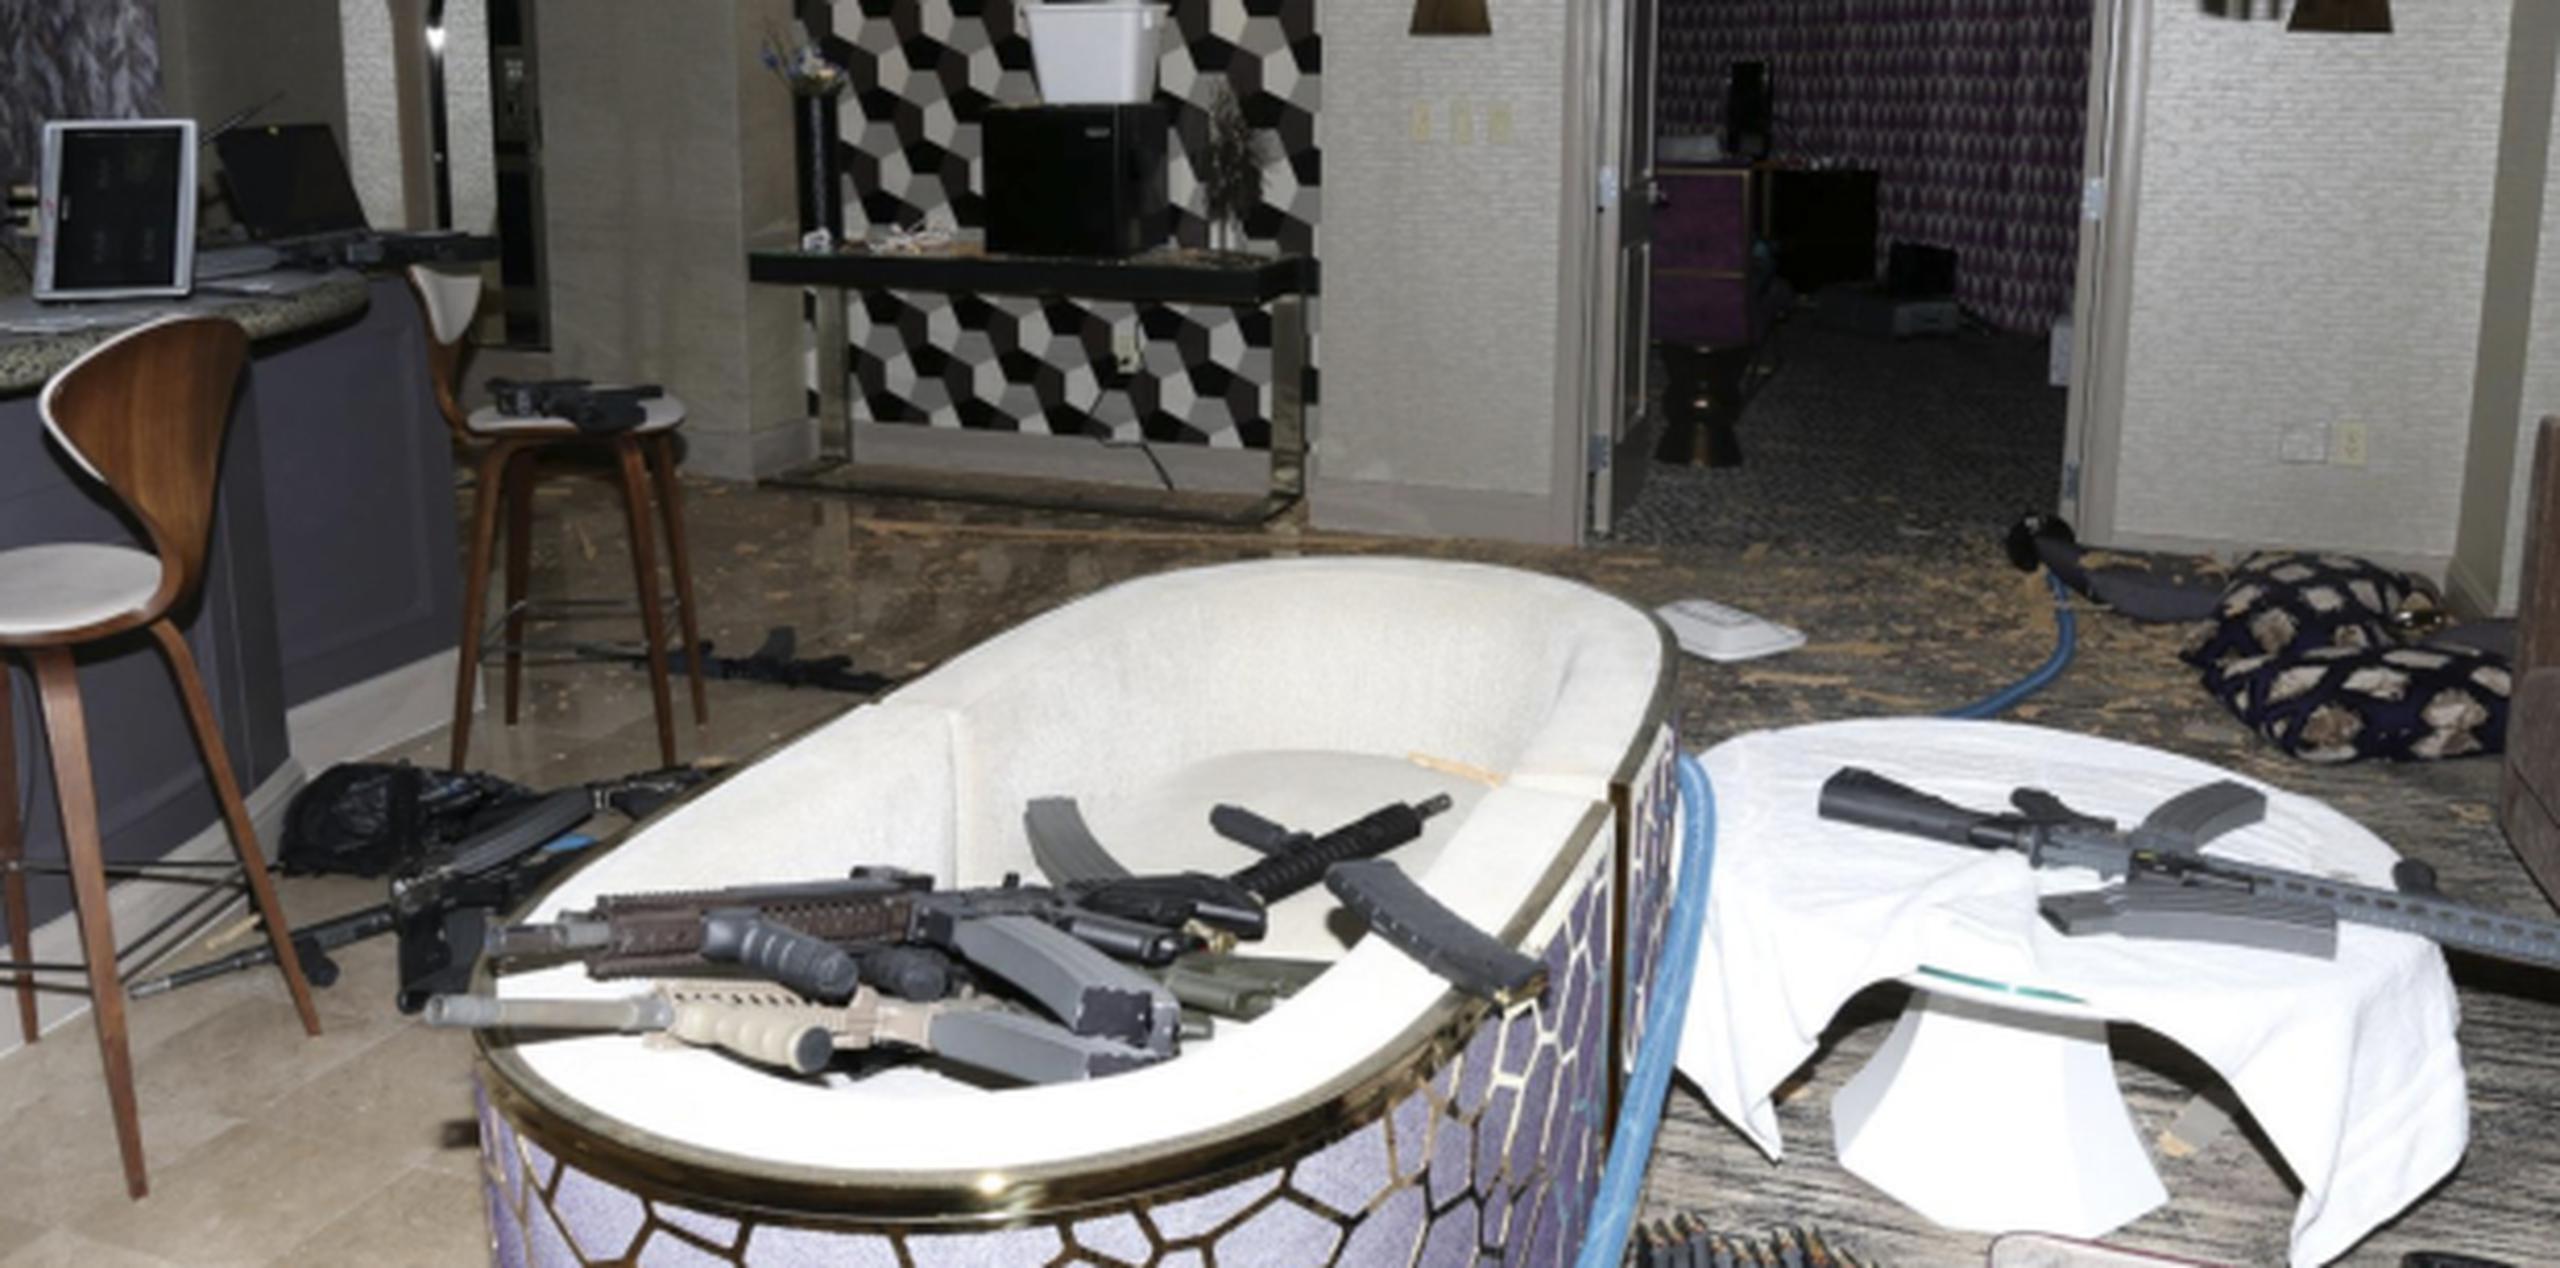 Armas en la habitación que separó Stephen Paddock en el hotel Mandalay Bay, desde donde mató a 58 personas. (Las Vegas Metropolitan Police Department vía AP)